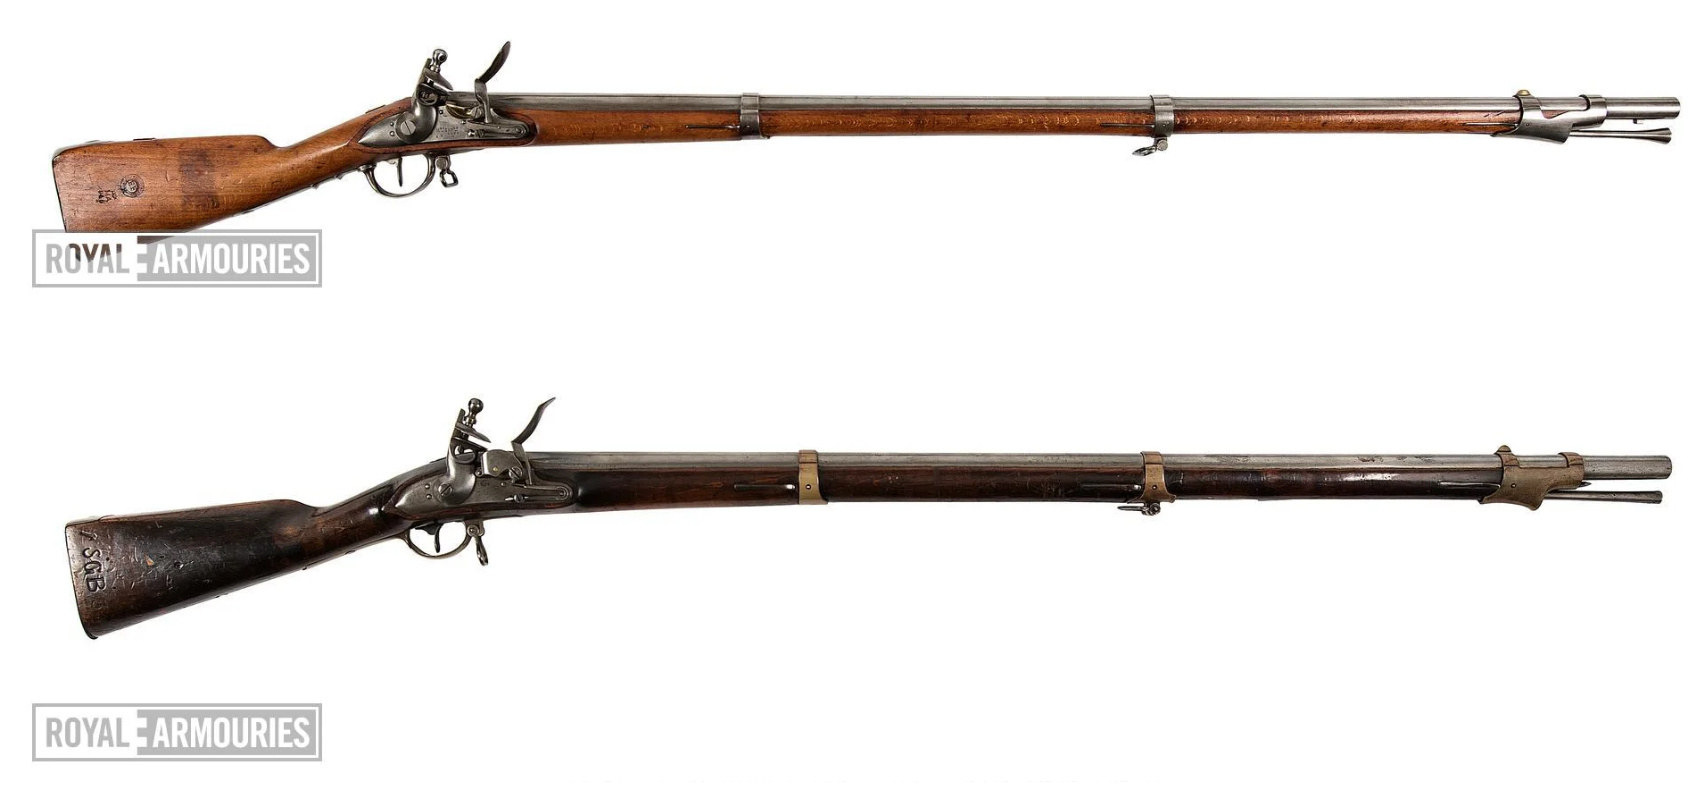 从排队枪毙到挨个点名德国十九世纪步枪发展史